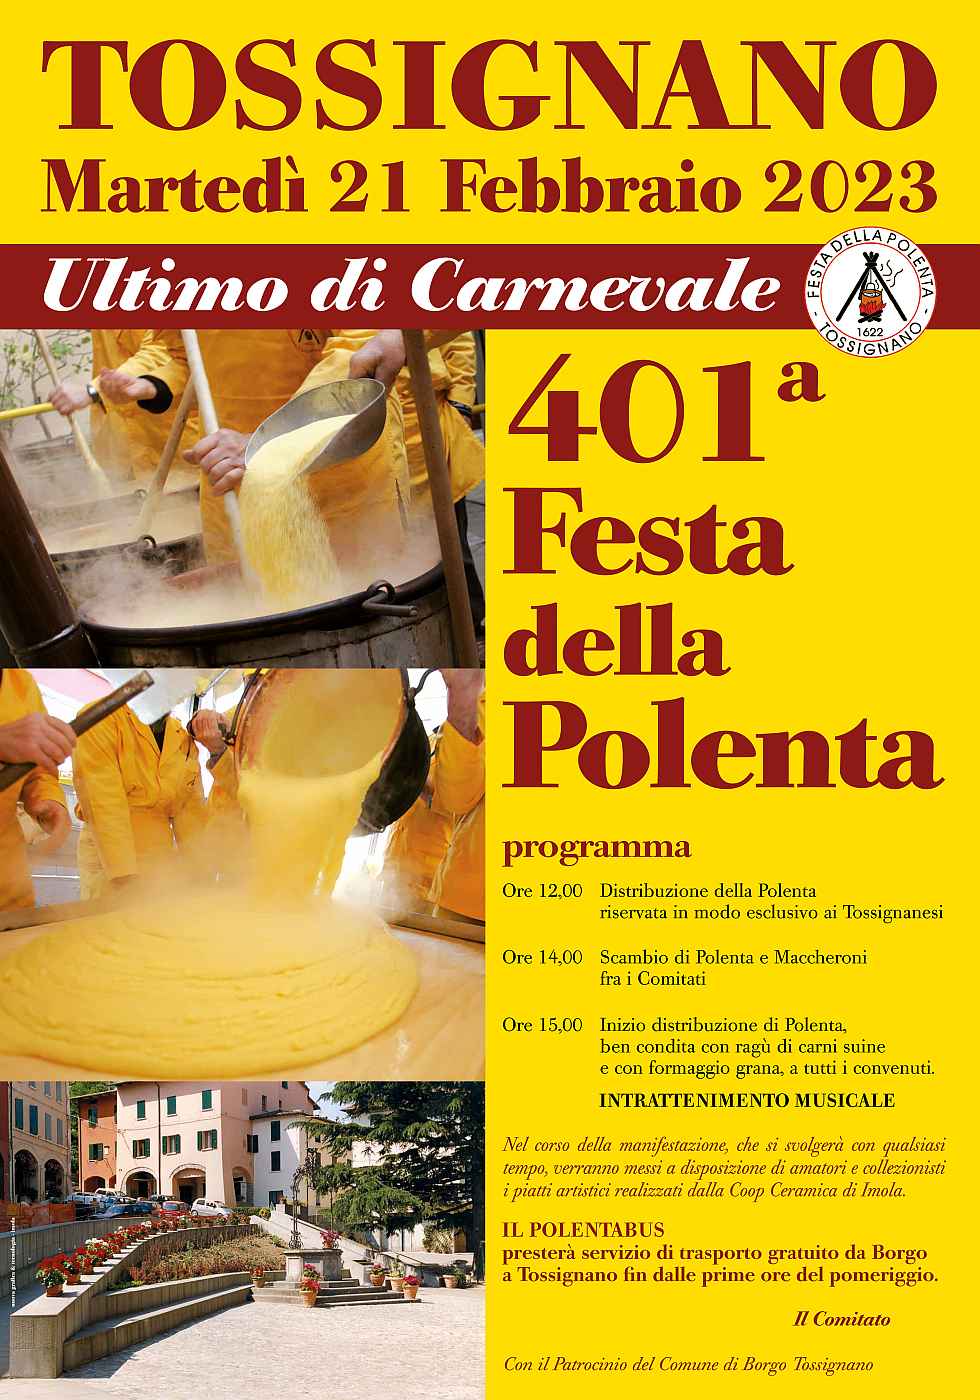 Borgo Tossignano (BO)
"Sagra dei Maccheroni e Festa della Polenta"
21 Febbraio 2023